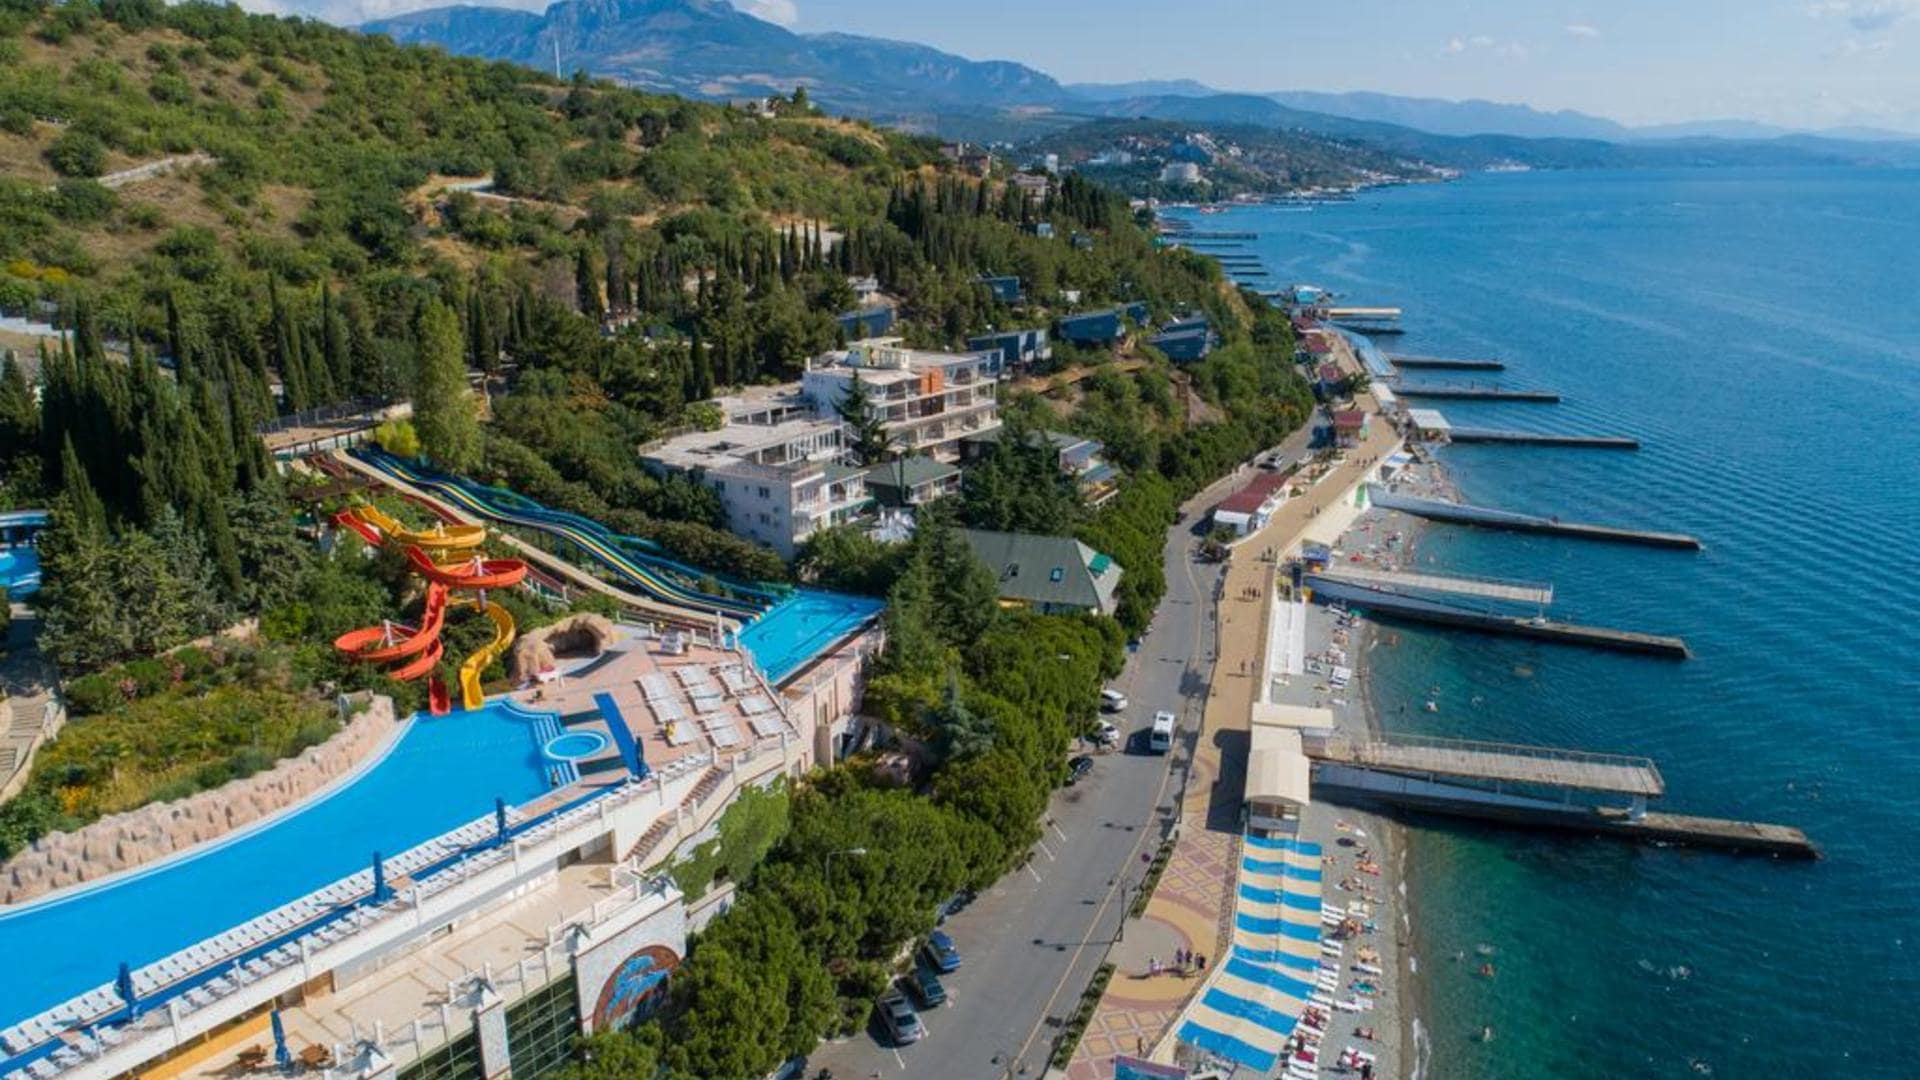 Отель “Миндальная Роща” - место, куда поехать отдыхать в Крым осенью